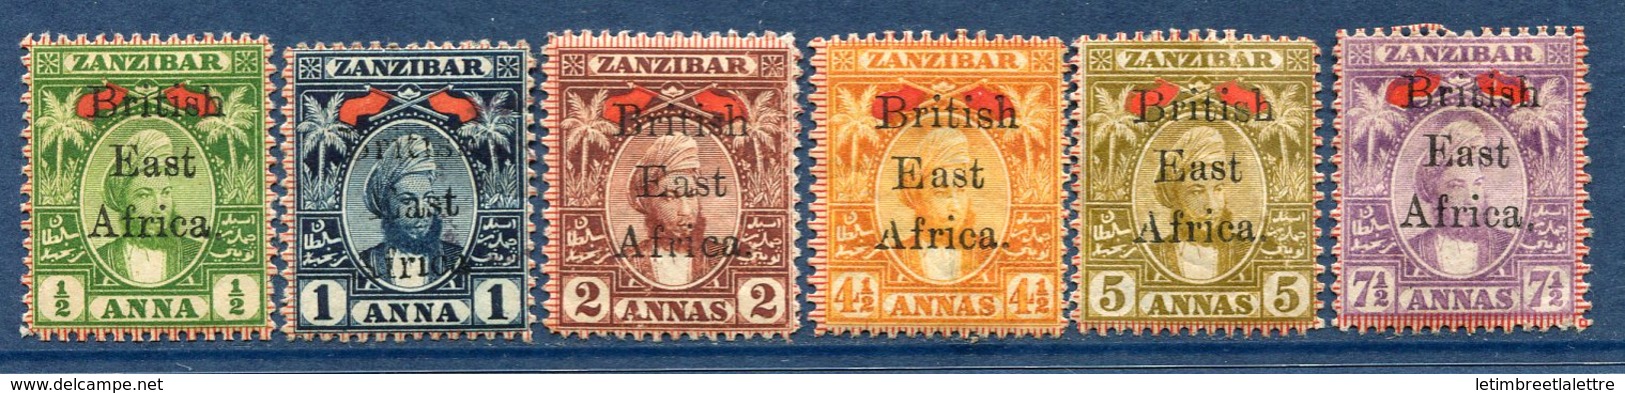 ⭐ Afrique Orientale Britannique - YT N° 84 à 89 * - Neuf Avec Charnière - ( Issus De La Série N° 84 à 91 ) ⭐ - Brits Oost-Afrika